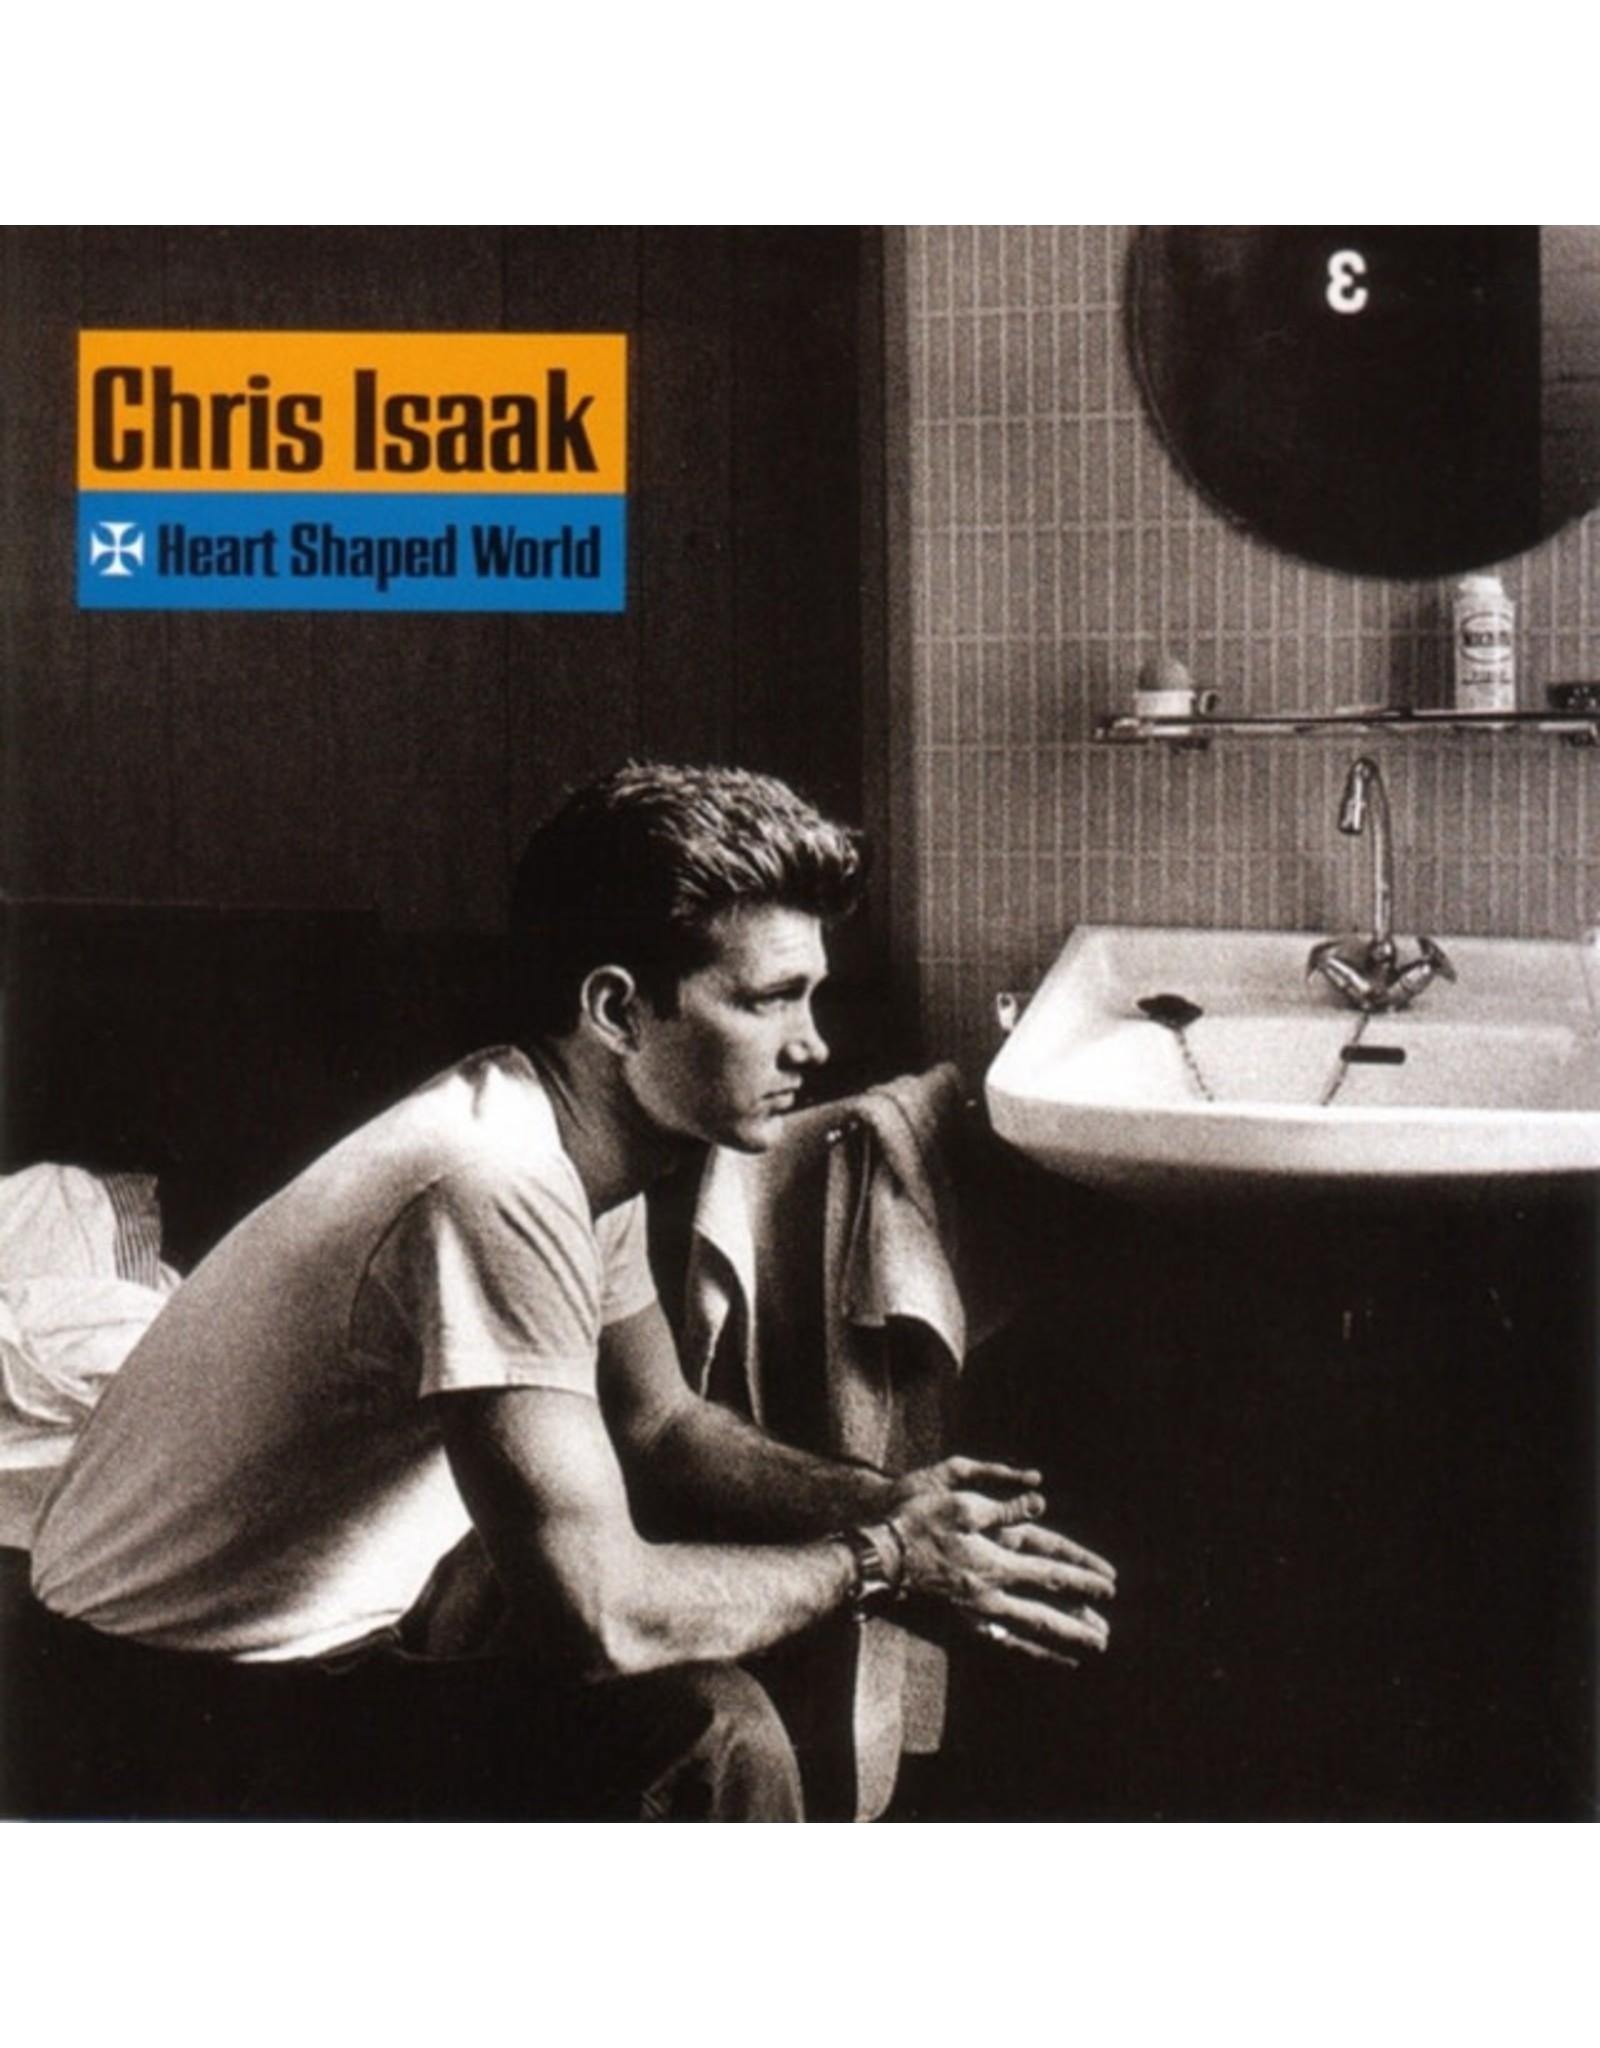 New Vinyl Chris Isaak - Heart Shaped World (RSD, 180g, White) LP